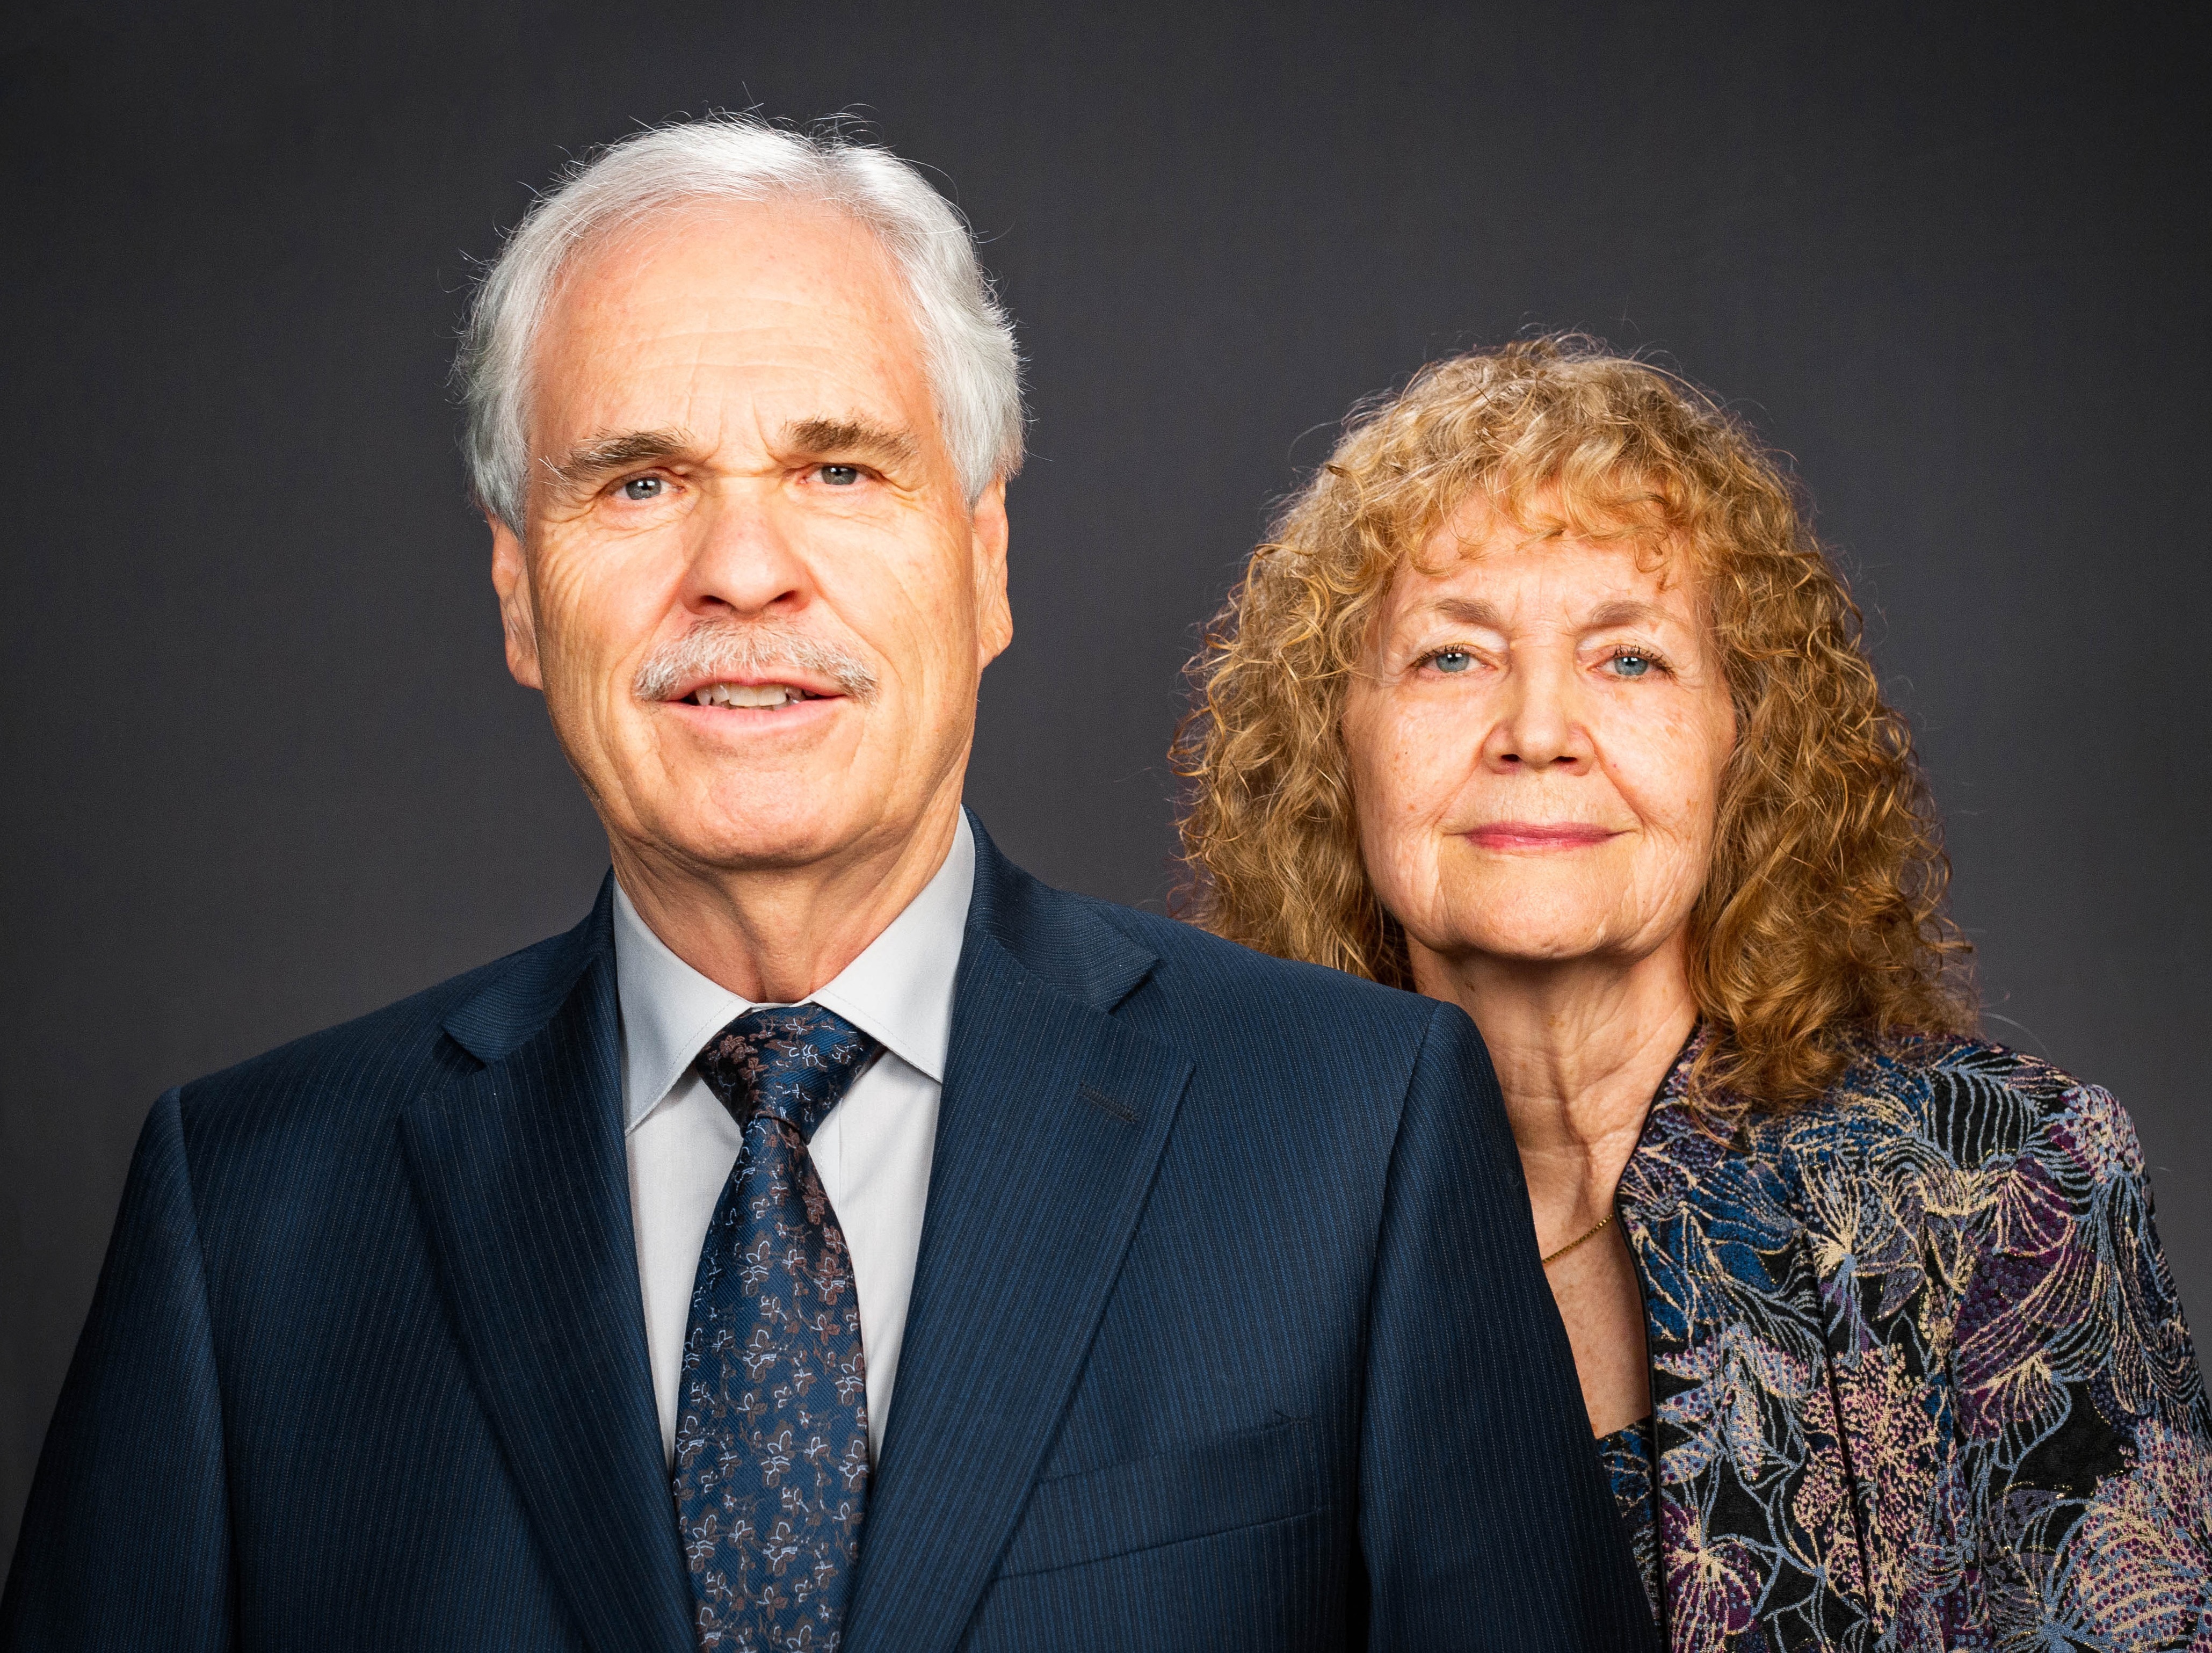 Le président de l'Église de Dieu Unie, Rick Shabi, et sa femme Deborah